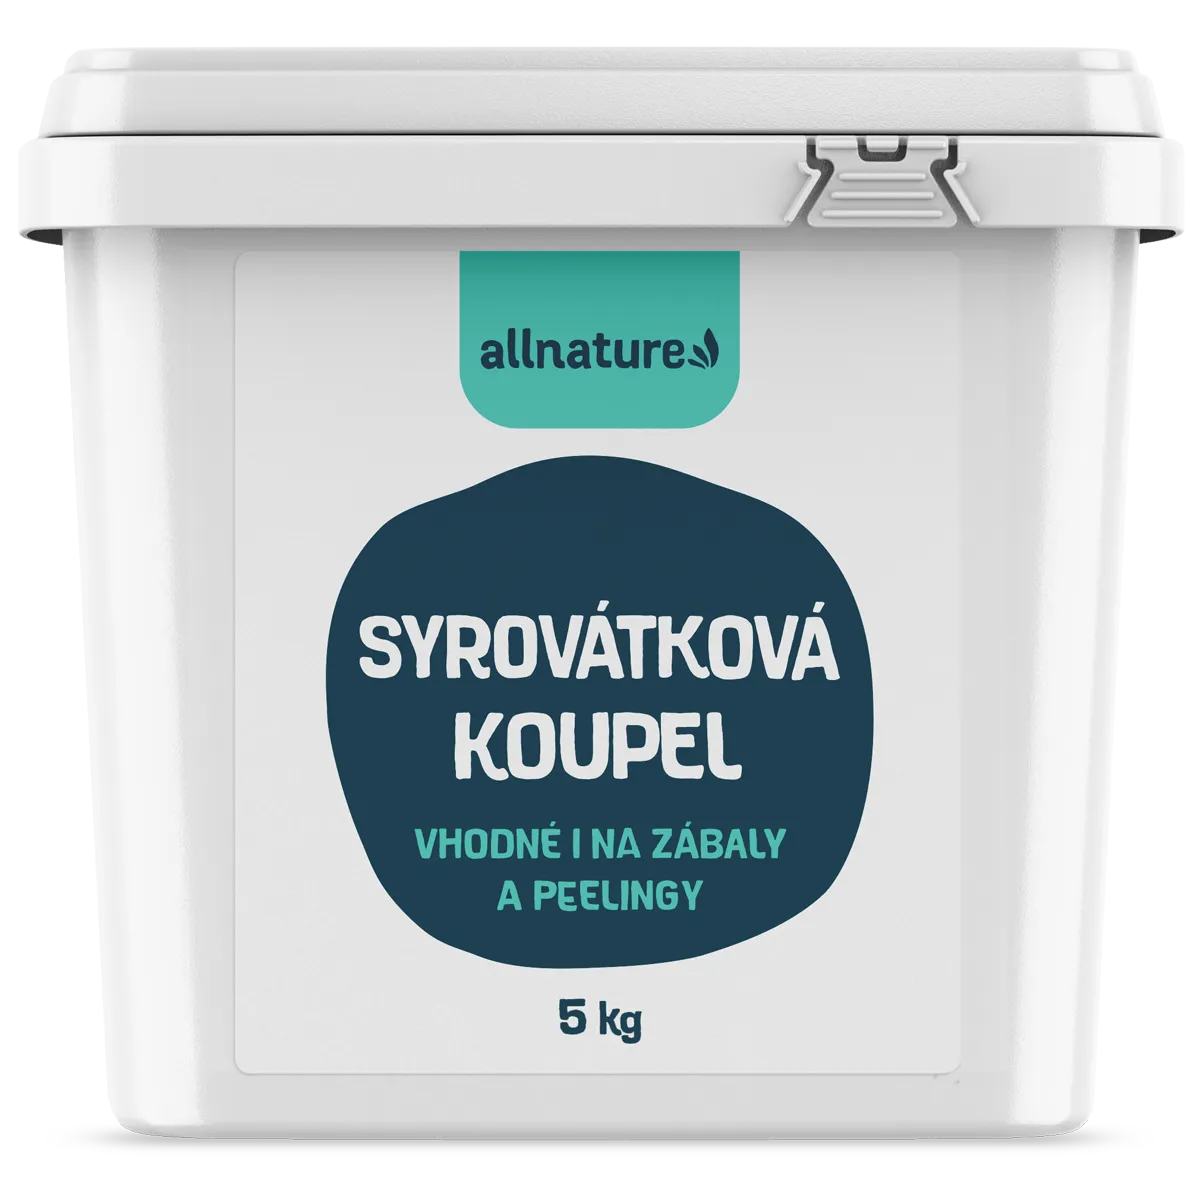 Allnature Syrovátková koupel 5 kg